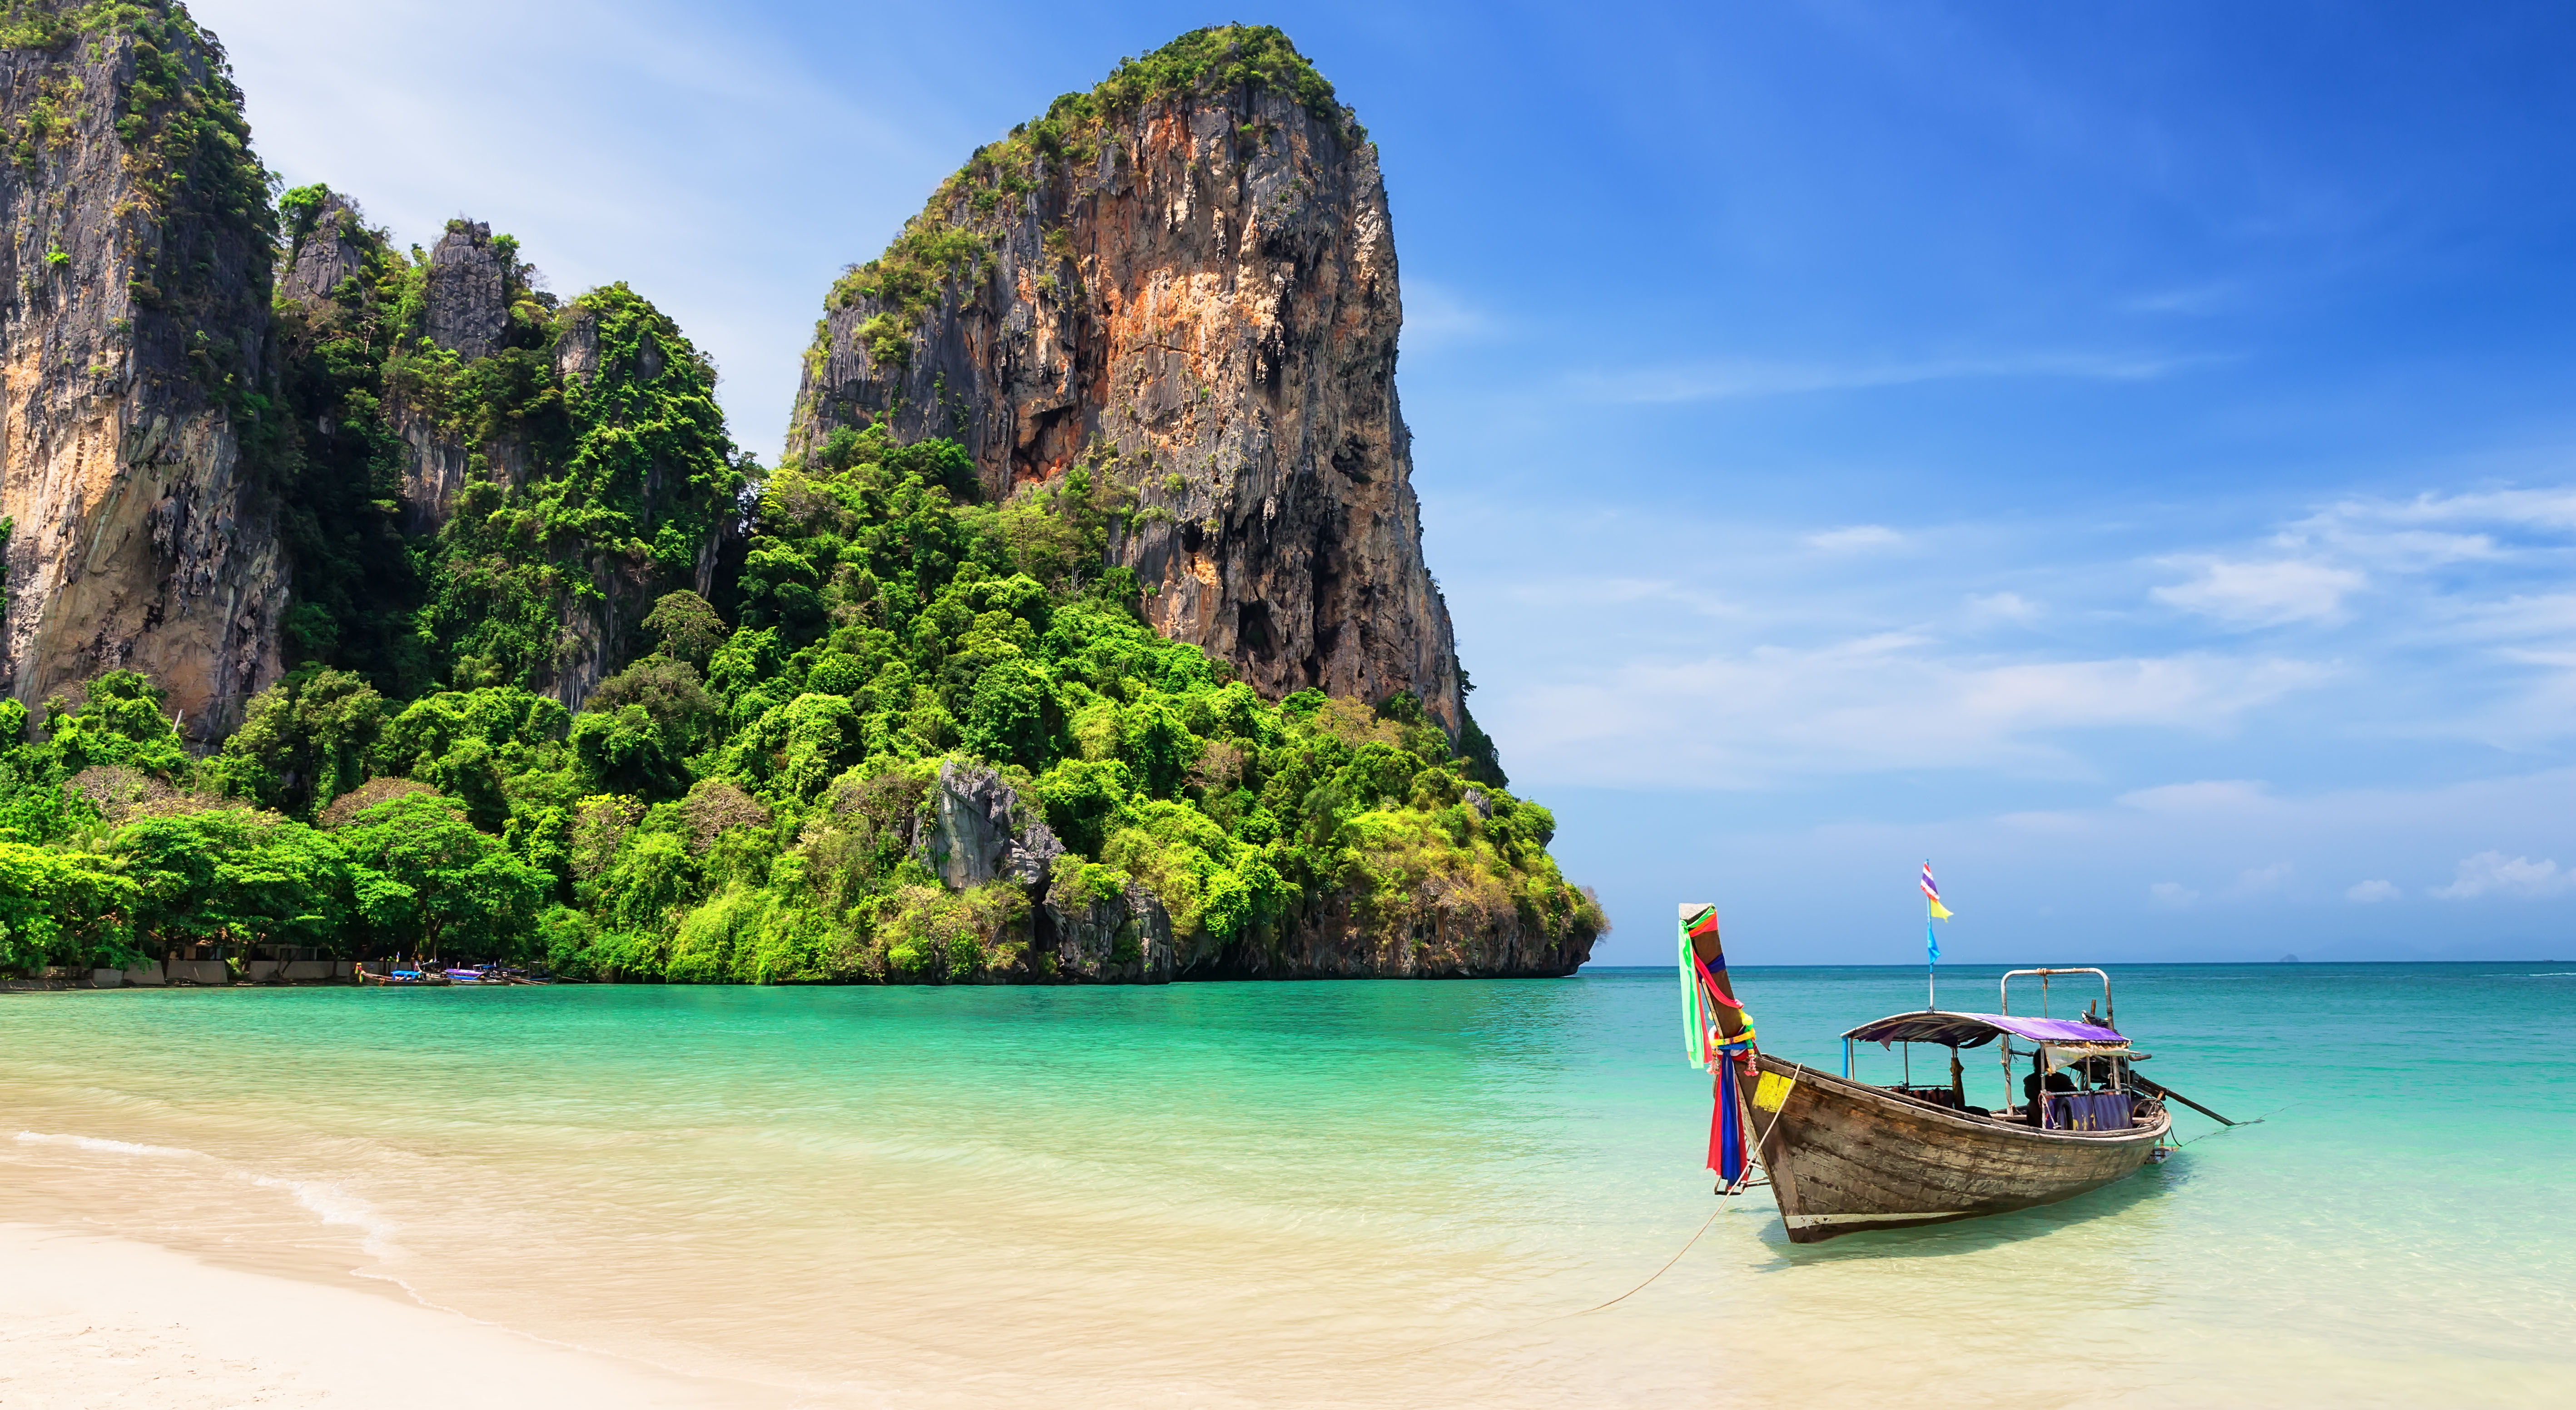 Las llegadas de turistas a Tailandia —un destacado destino turístico— han disminuido drásticamente. Además de proporcionar financiamiento en condiciones favorables a operadores turísticos, el país está promoviendo el turismo nacional y las estancias de larga duración. (Foto: Preto Perola de Getty Images)